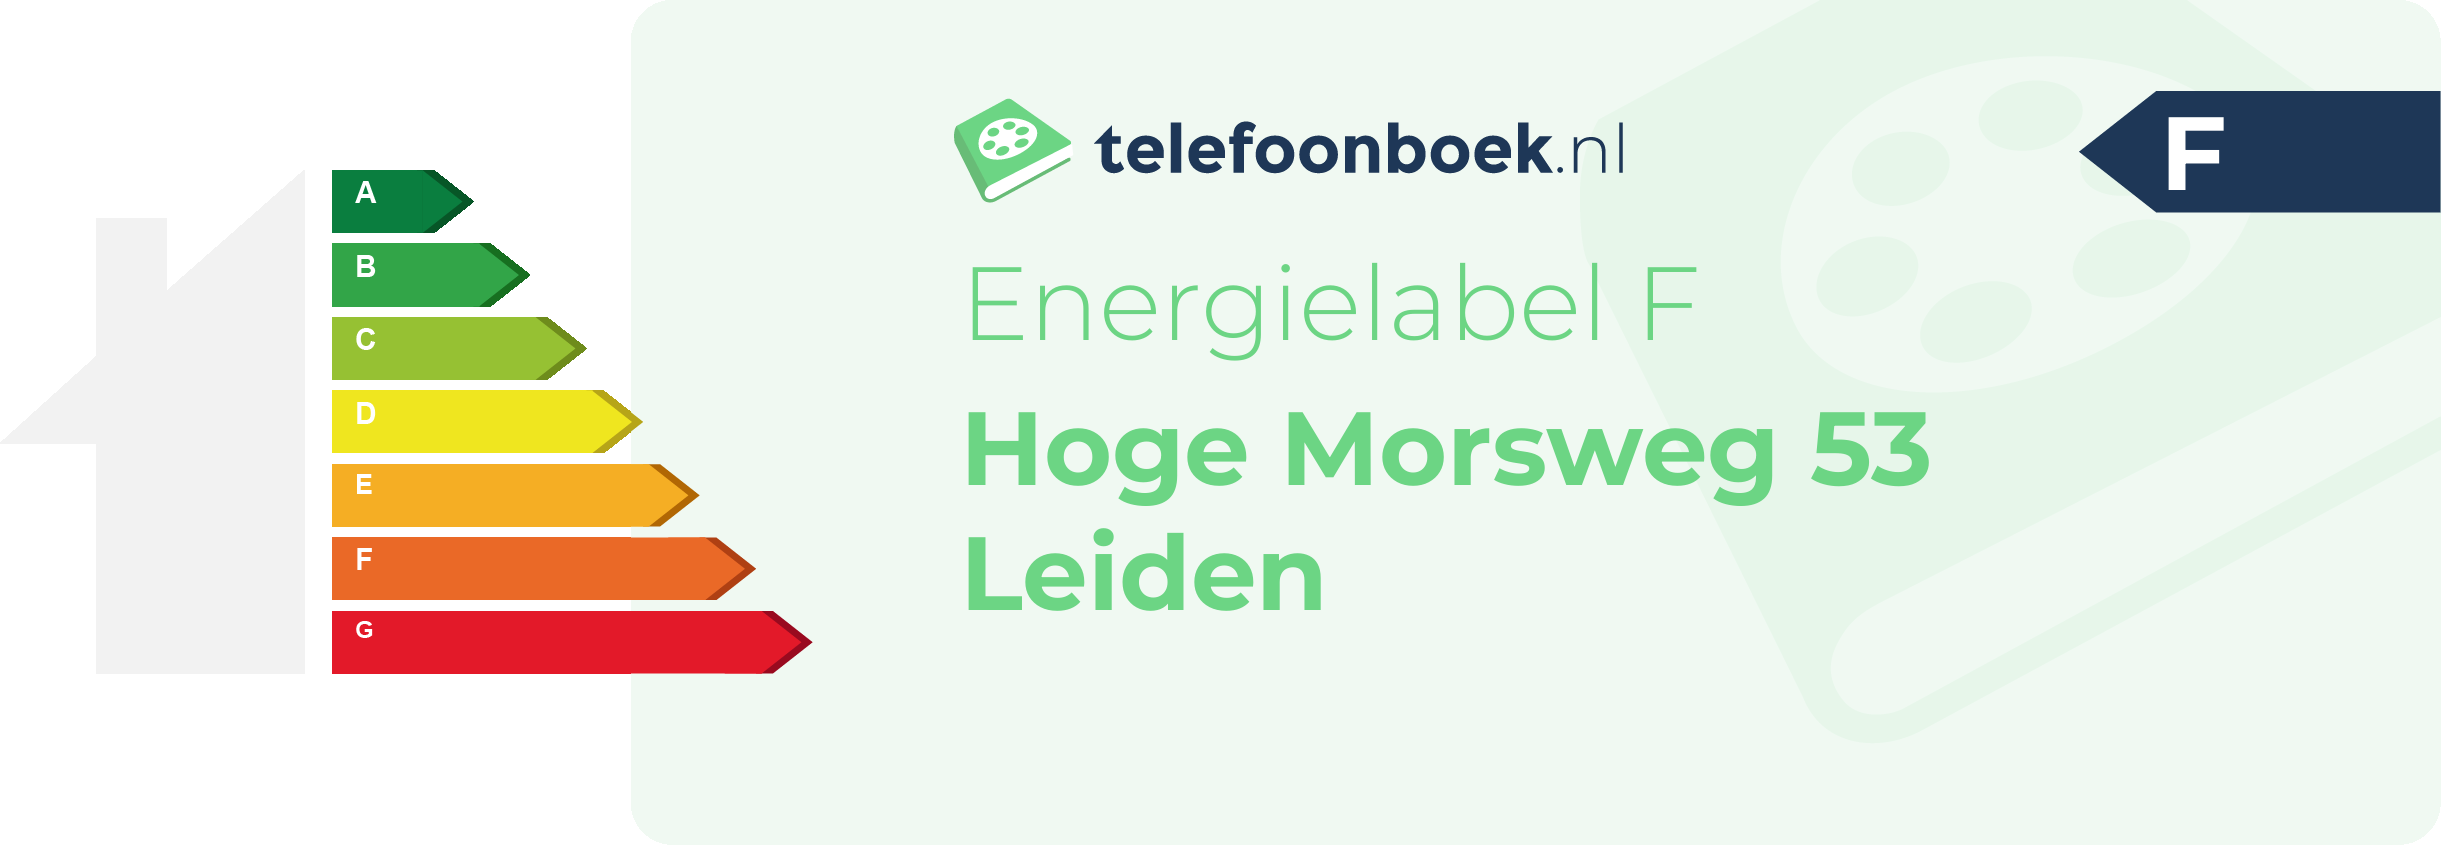 Energielabel Hoge Morsweg 53 Leiden